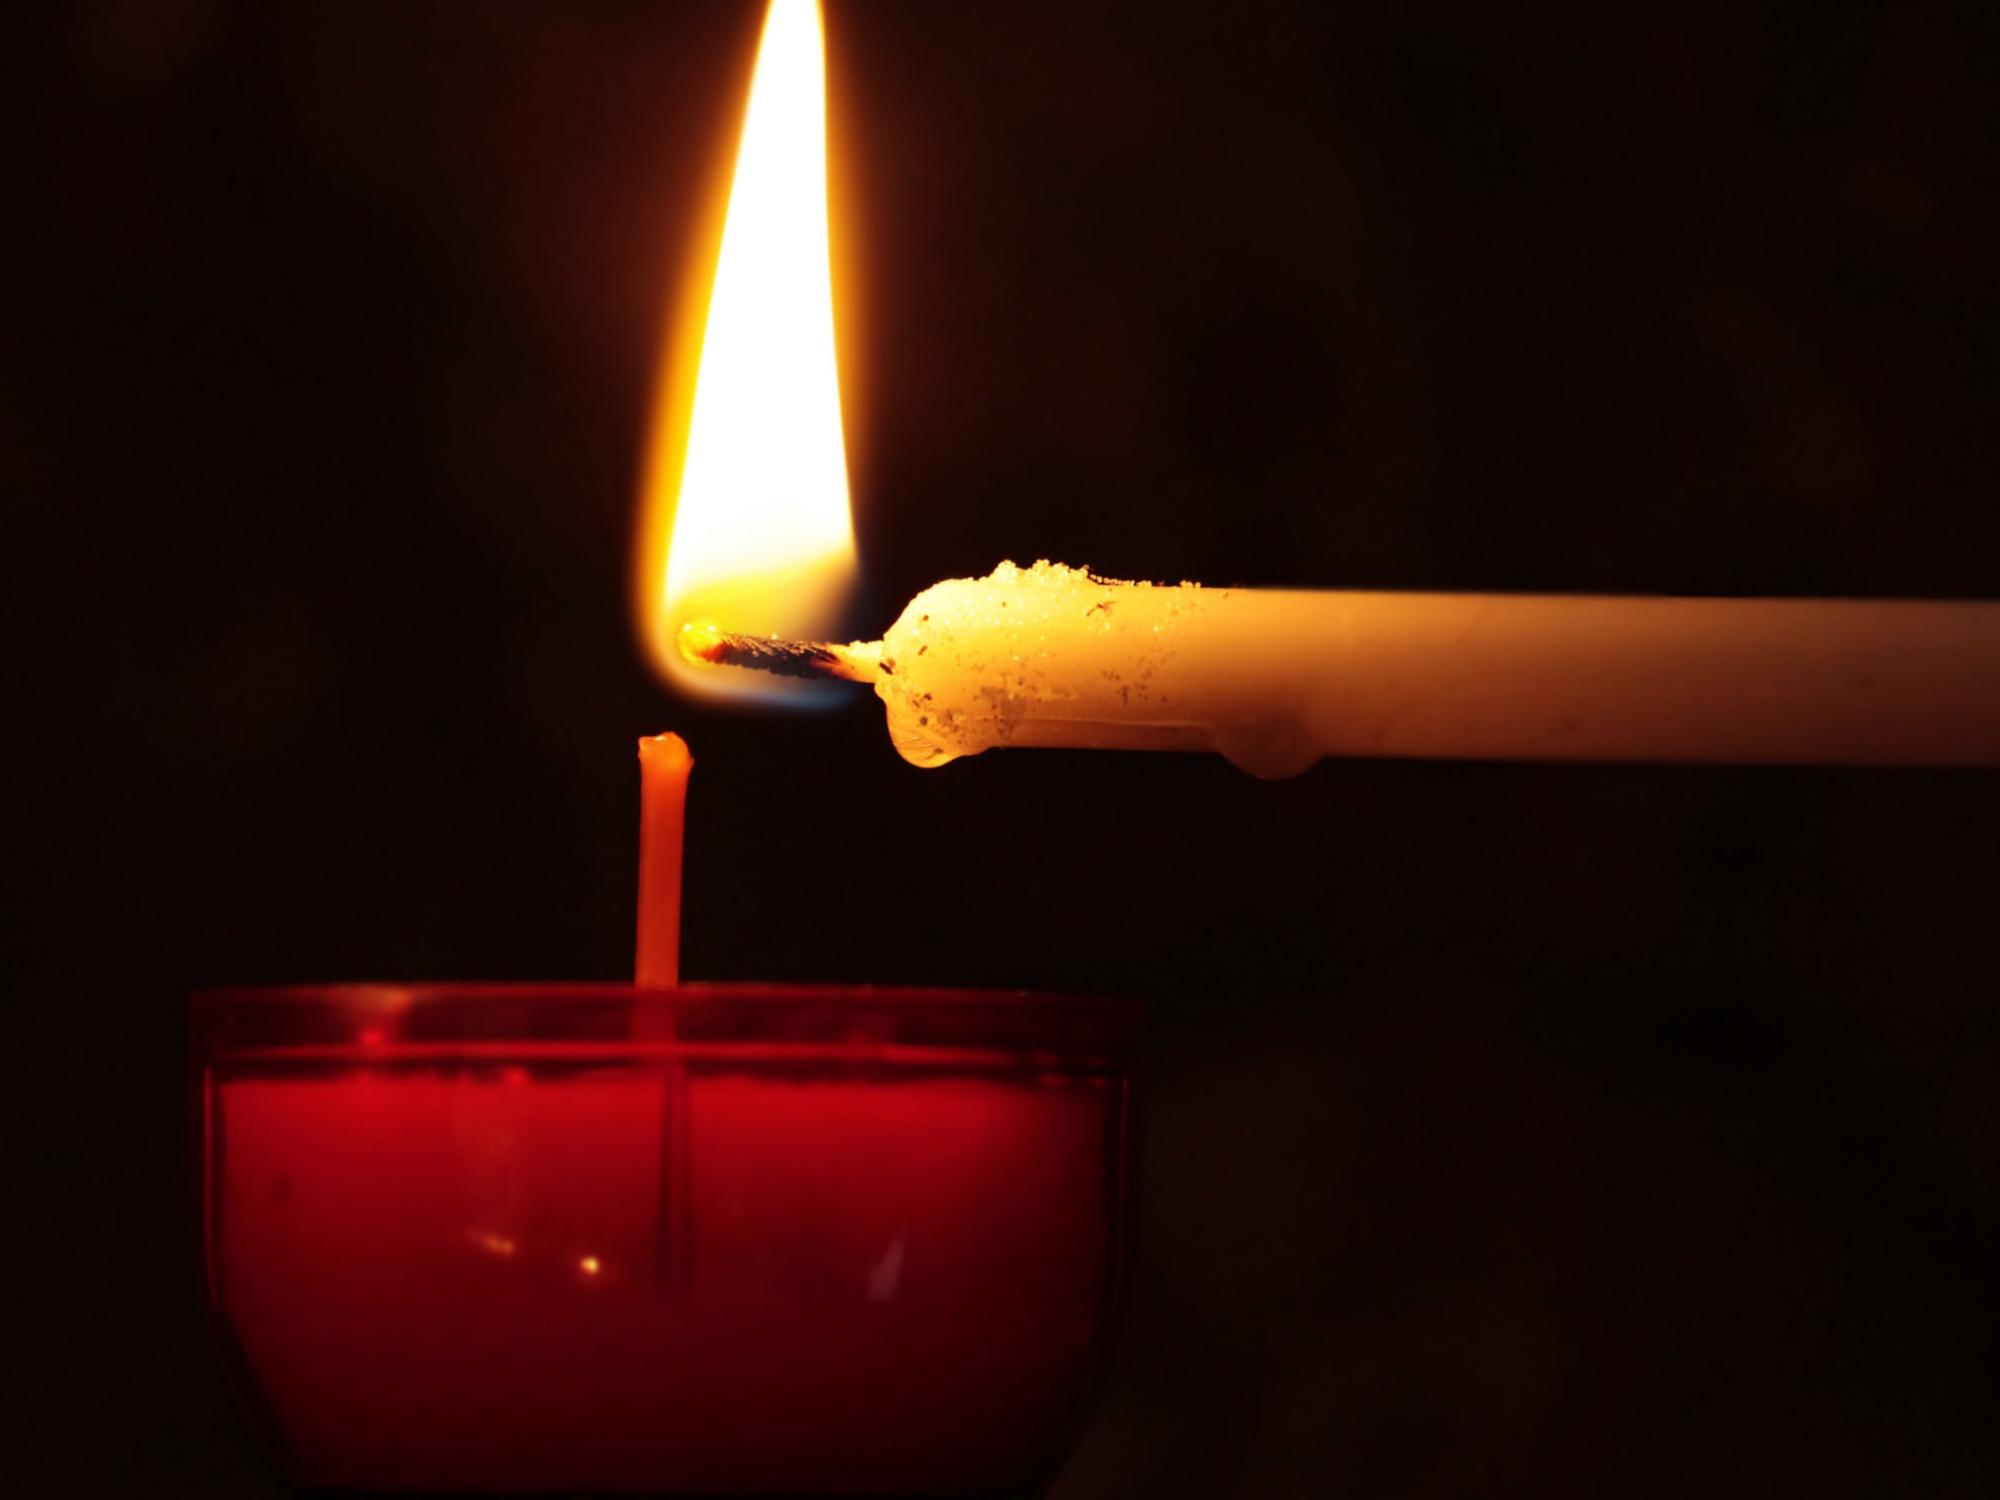 Vespern in der Fastenzeit. (c) candle-2738529_by_pixel2013_cc0-gemeinfrei_pixabay_pfarrbriefservice